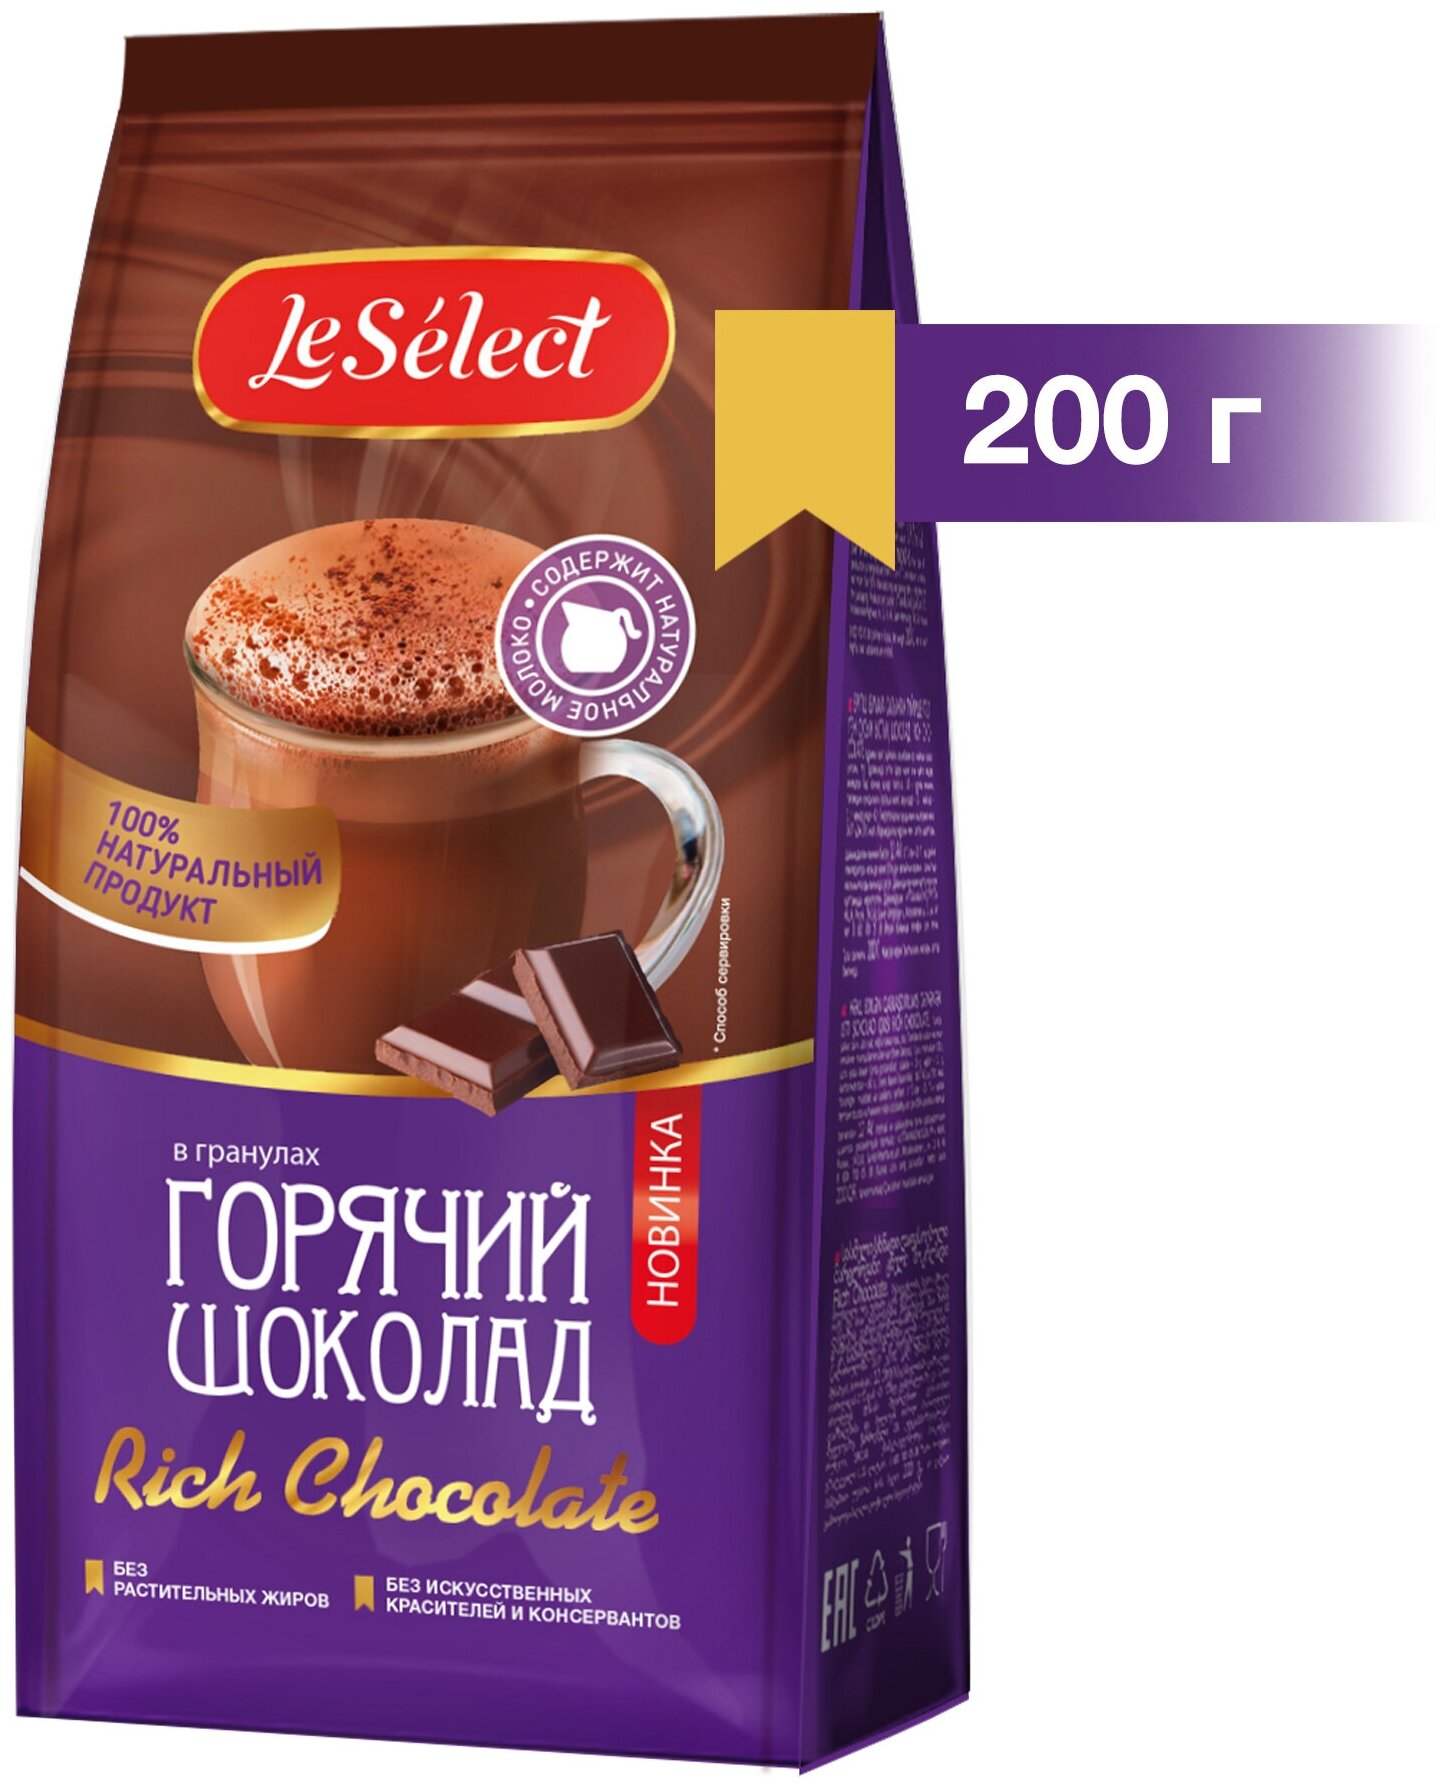 Горячий шоколад Rich Chocolate, Le Select, на натуральном молоке, гранулированный, 200 г. - фотография № 2